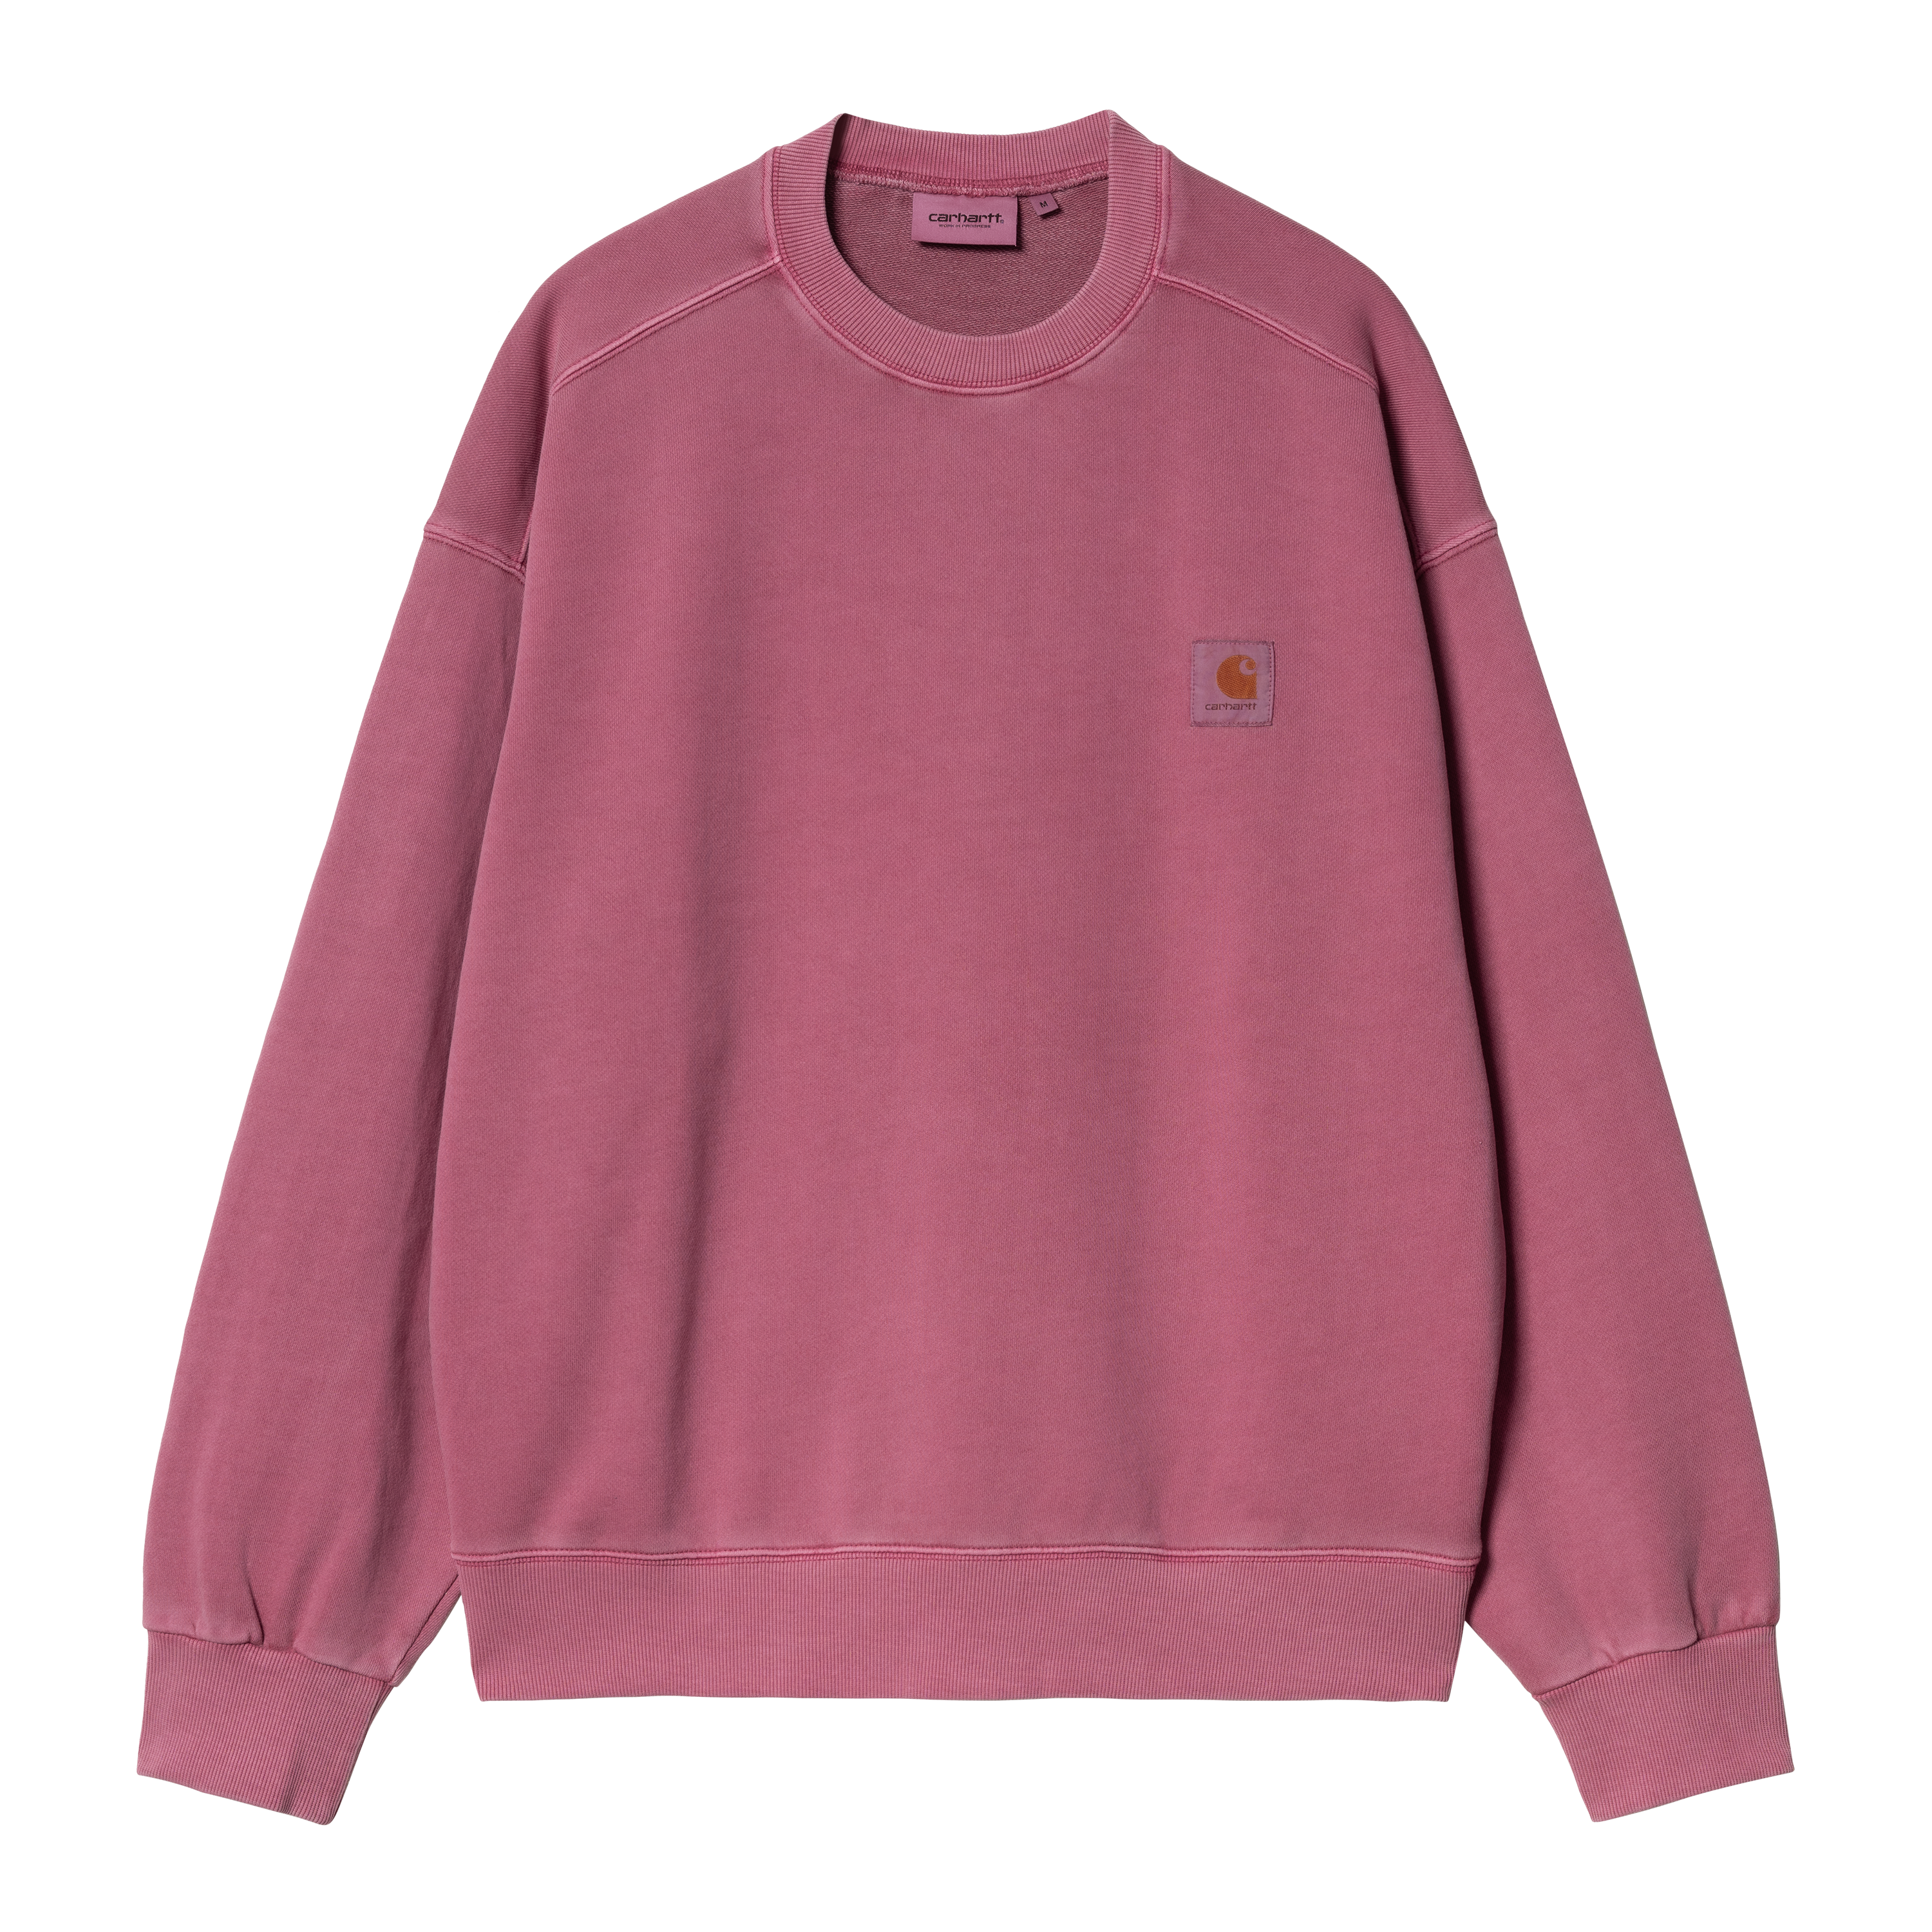 Carhartt WIP Nelson Sweatshirt in Pink